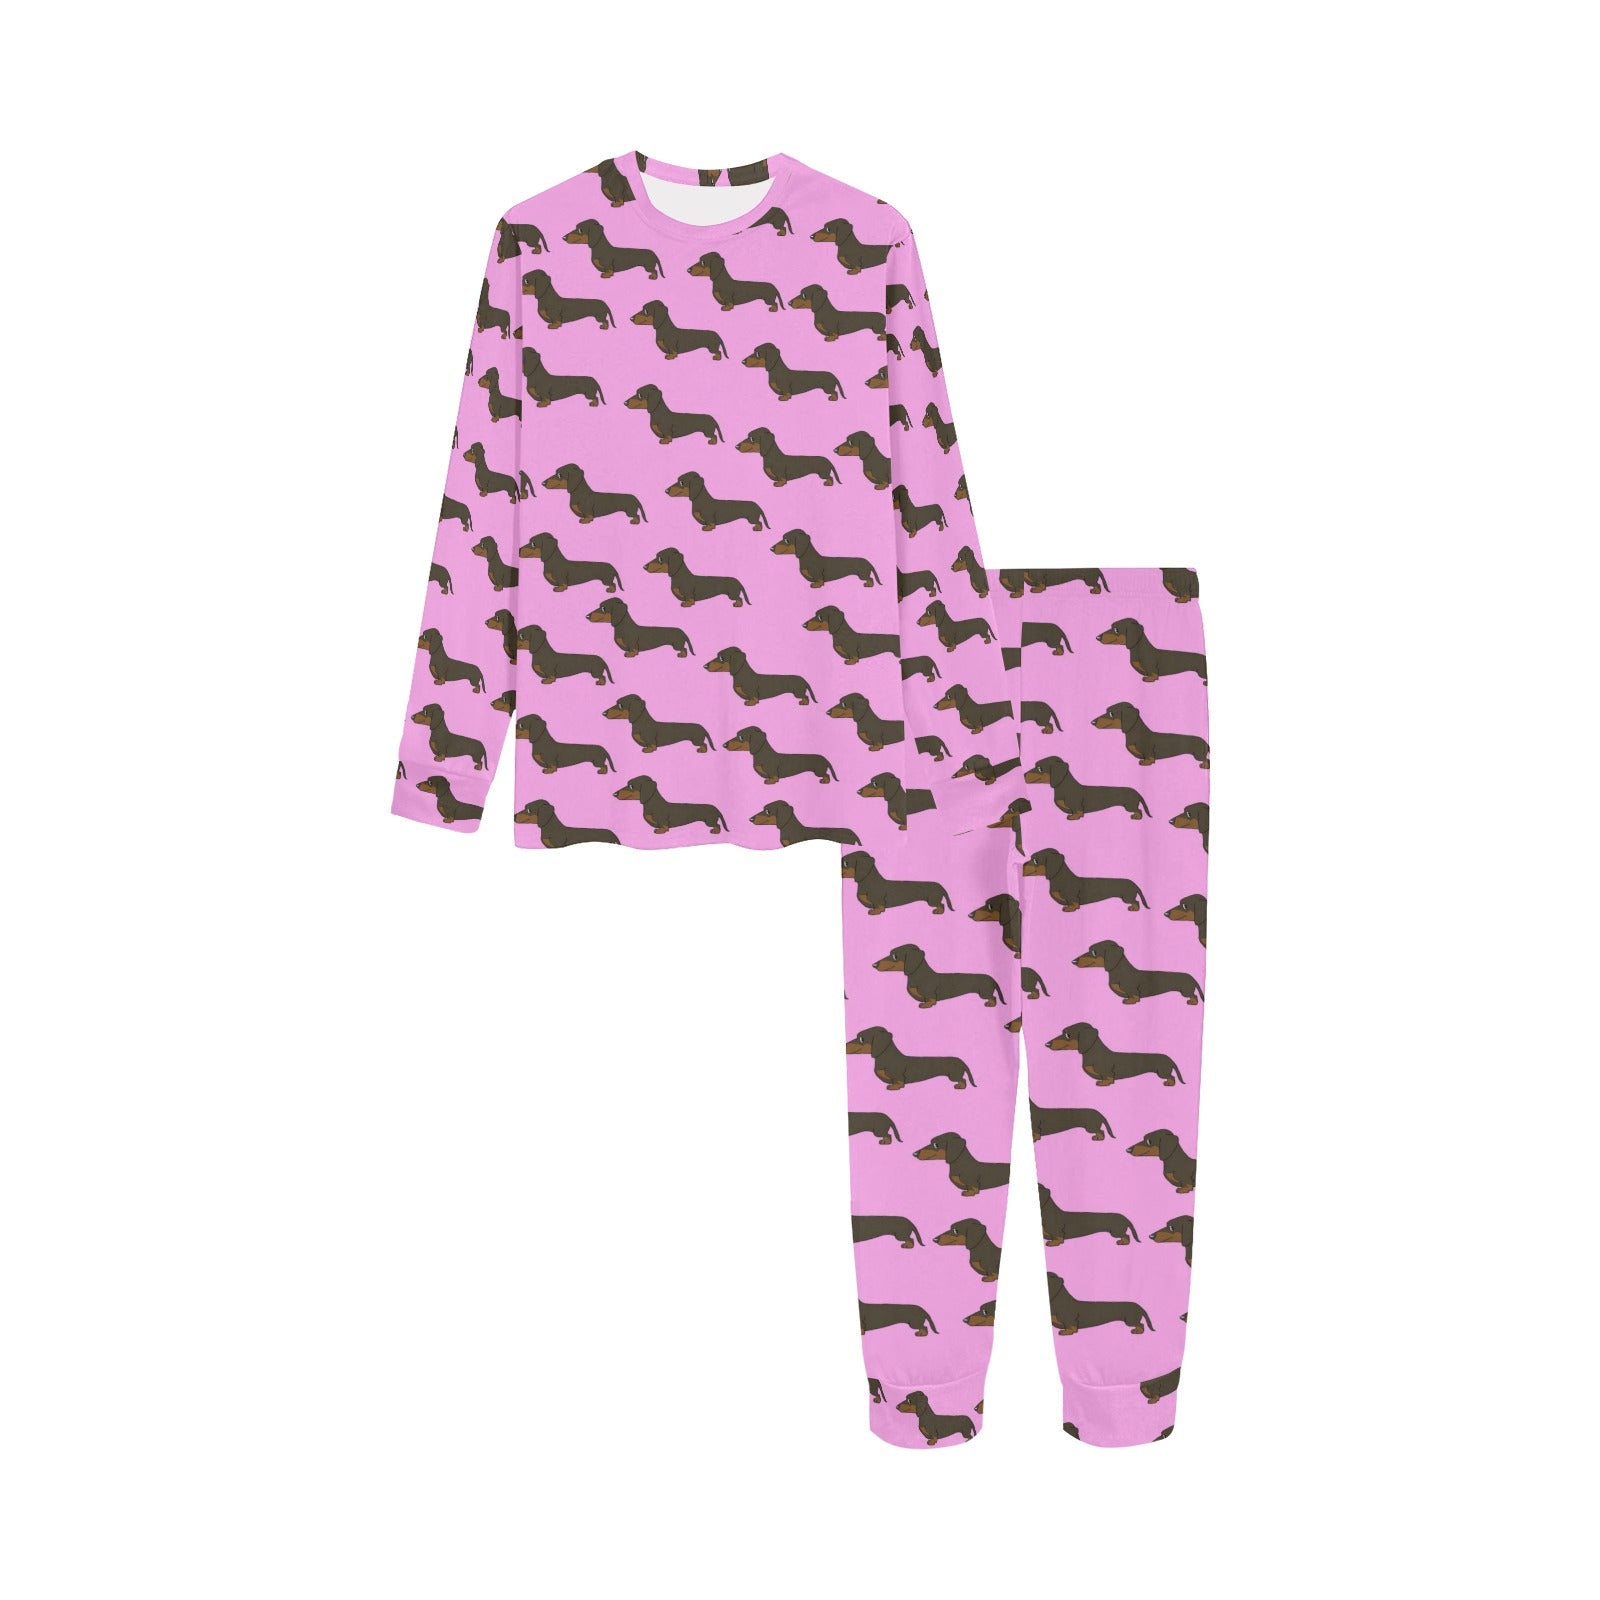 2 Piece Dachshund Children's Pajama Set - Pink